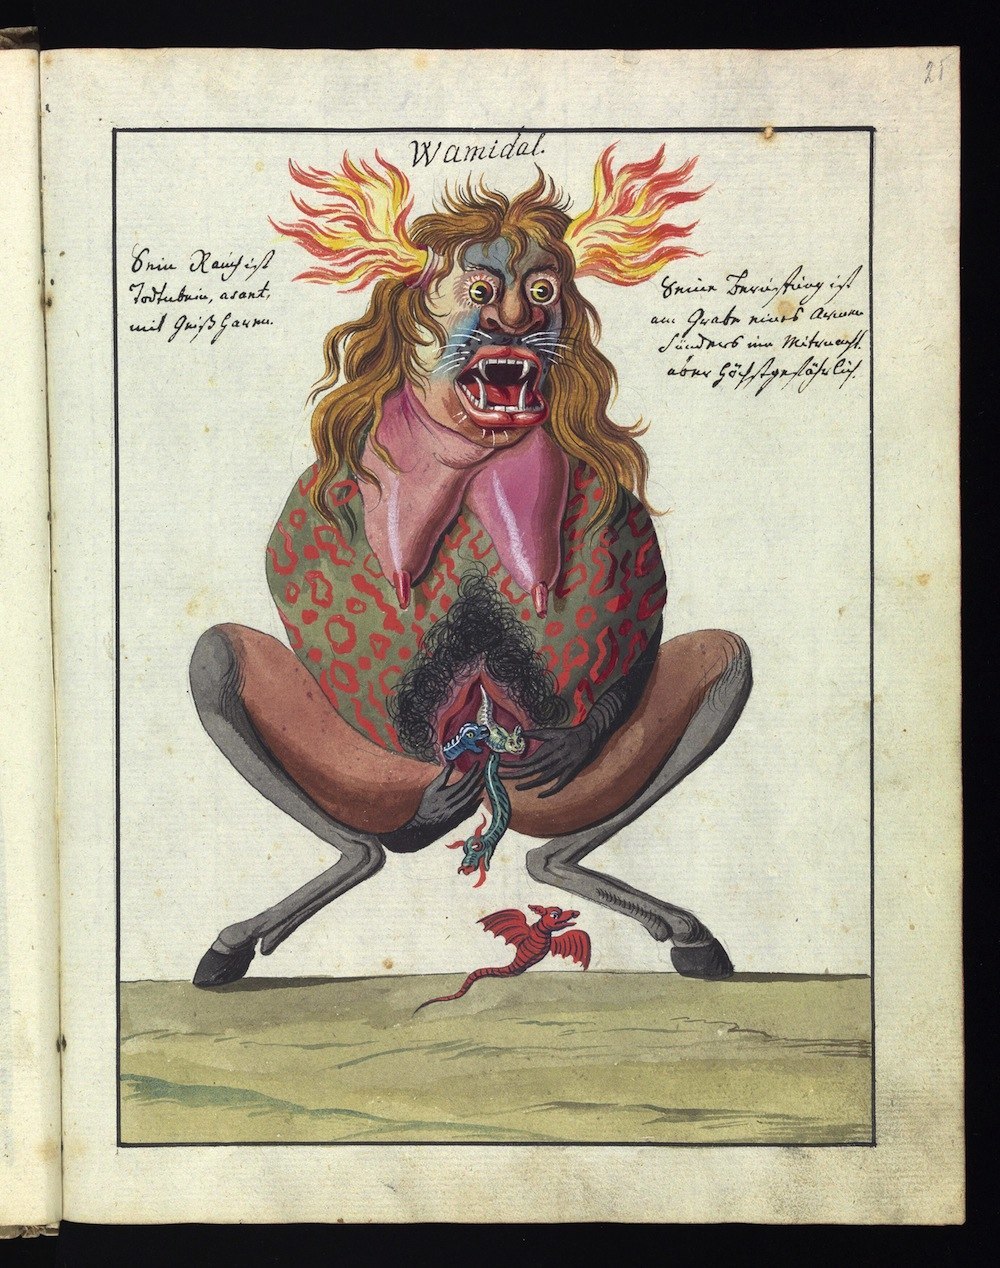 compendium rarissimum totius Artis Magicae sistematisatae per celeberrimos Artis hujus Magistros, a book of "Satanic" illustrations from the 18th century 